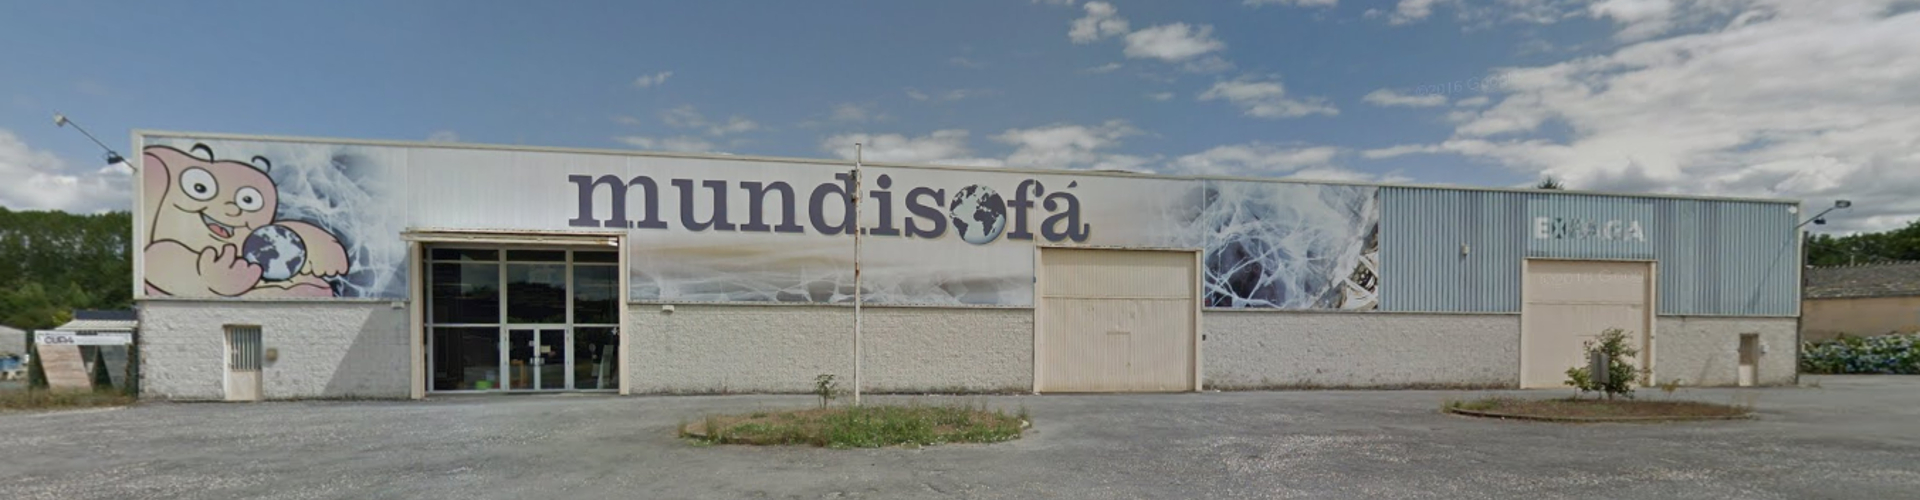 tienda online de sofás Mundisofa en Galicia